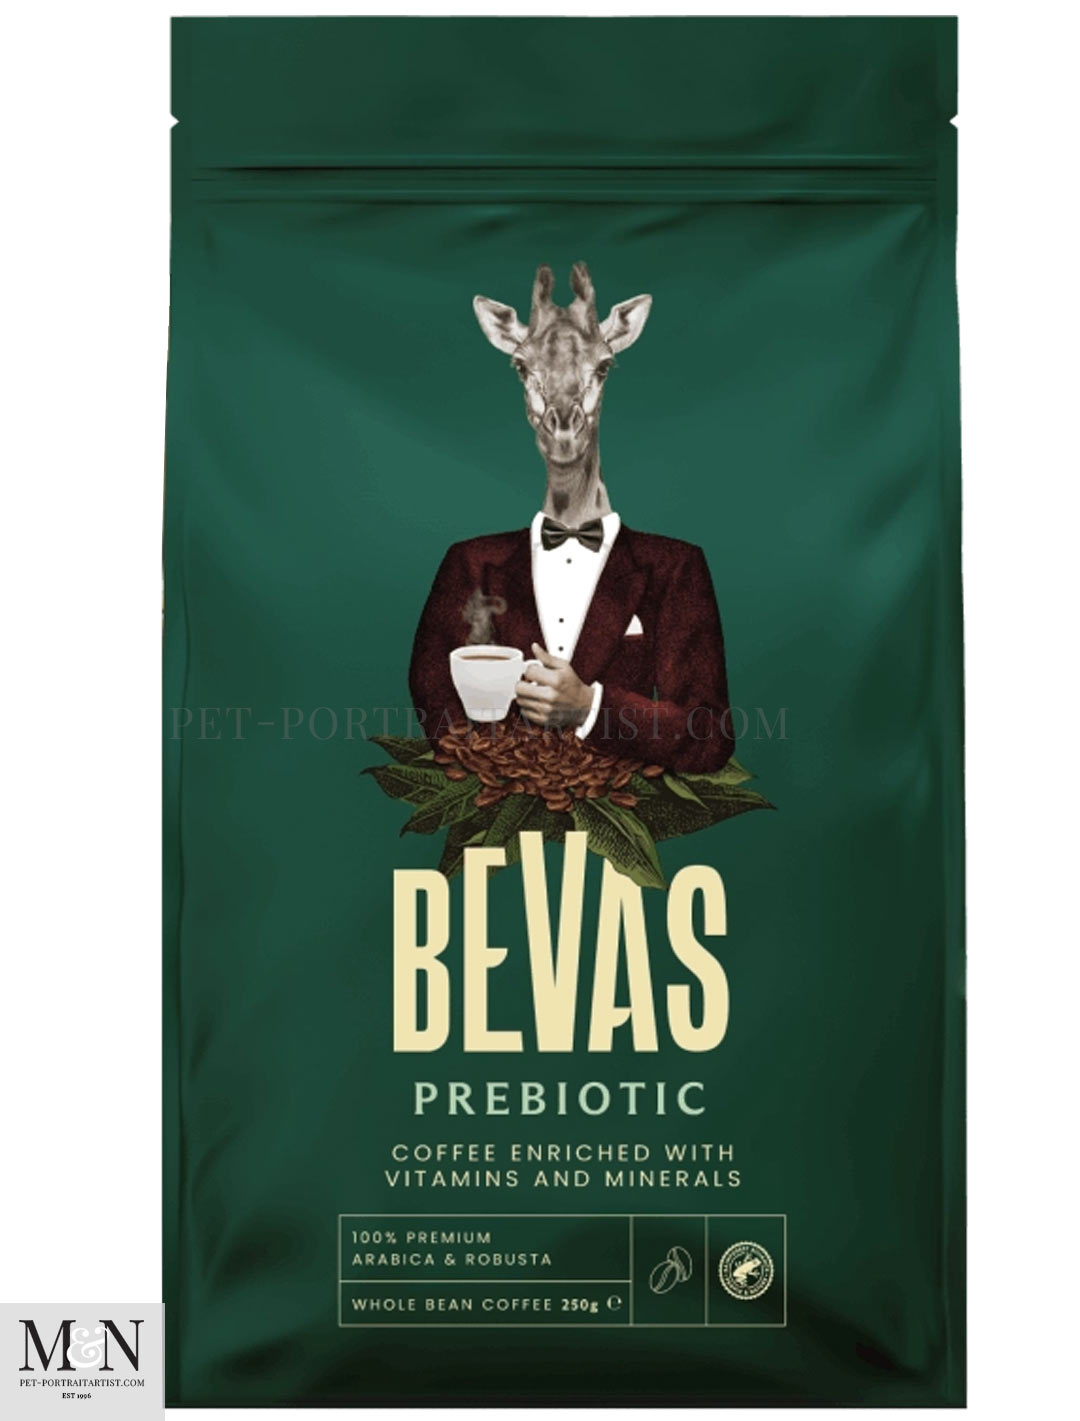 Bevas Prebiotic Coffee